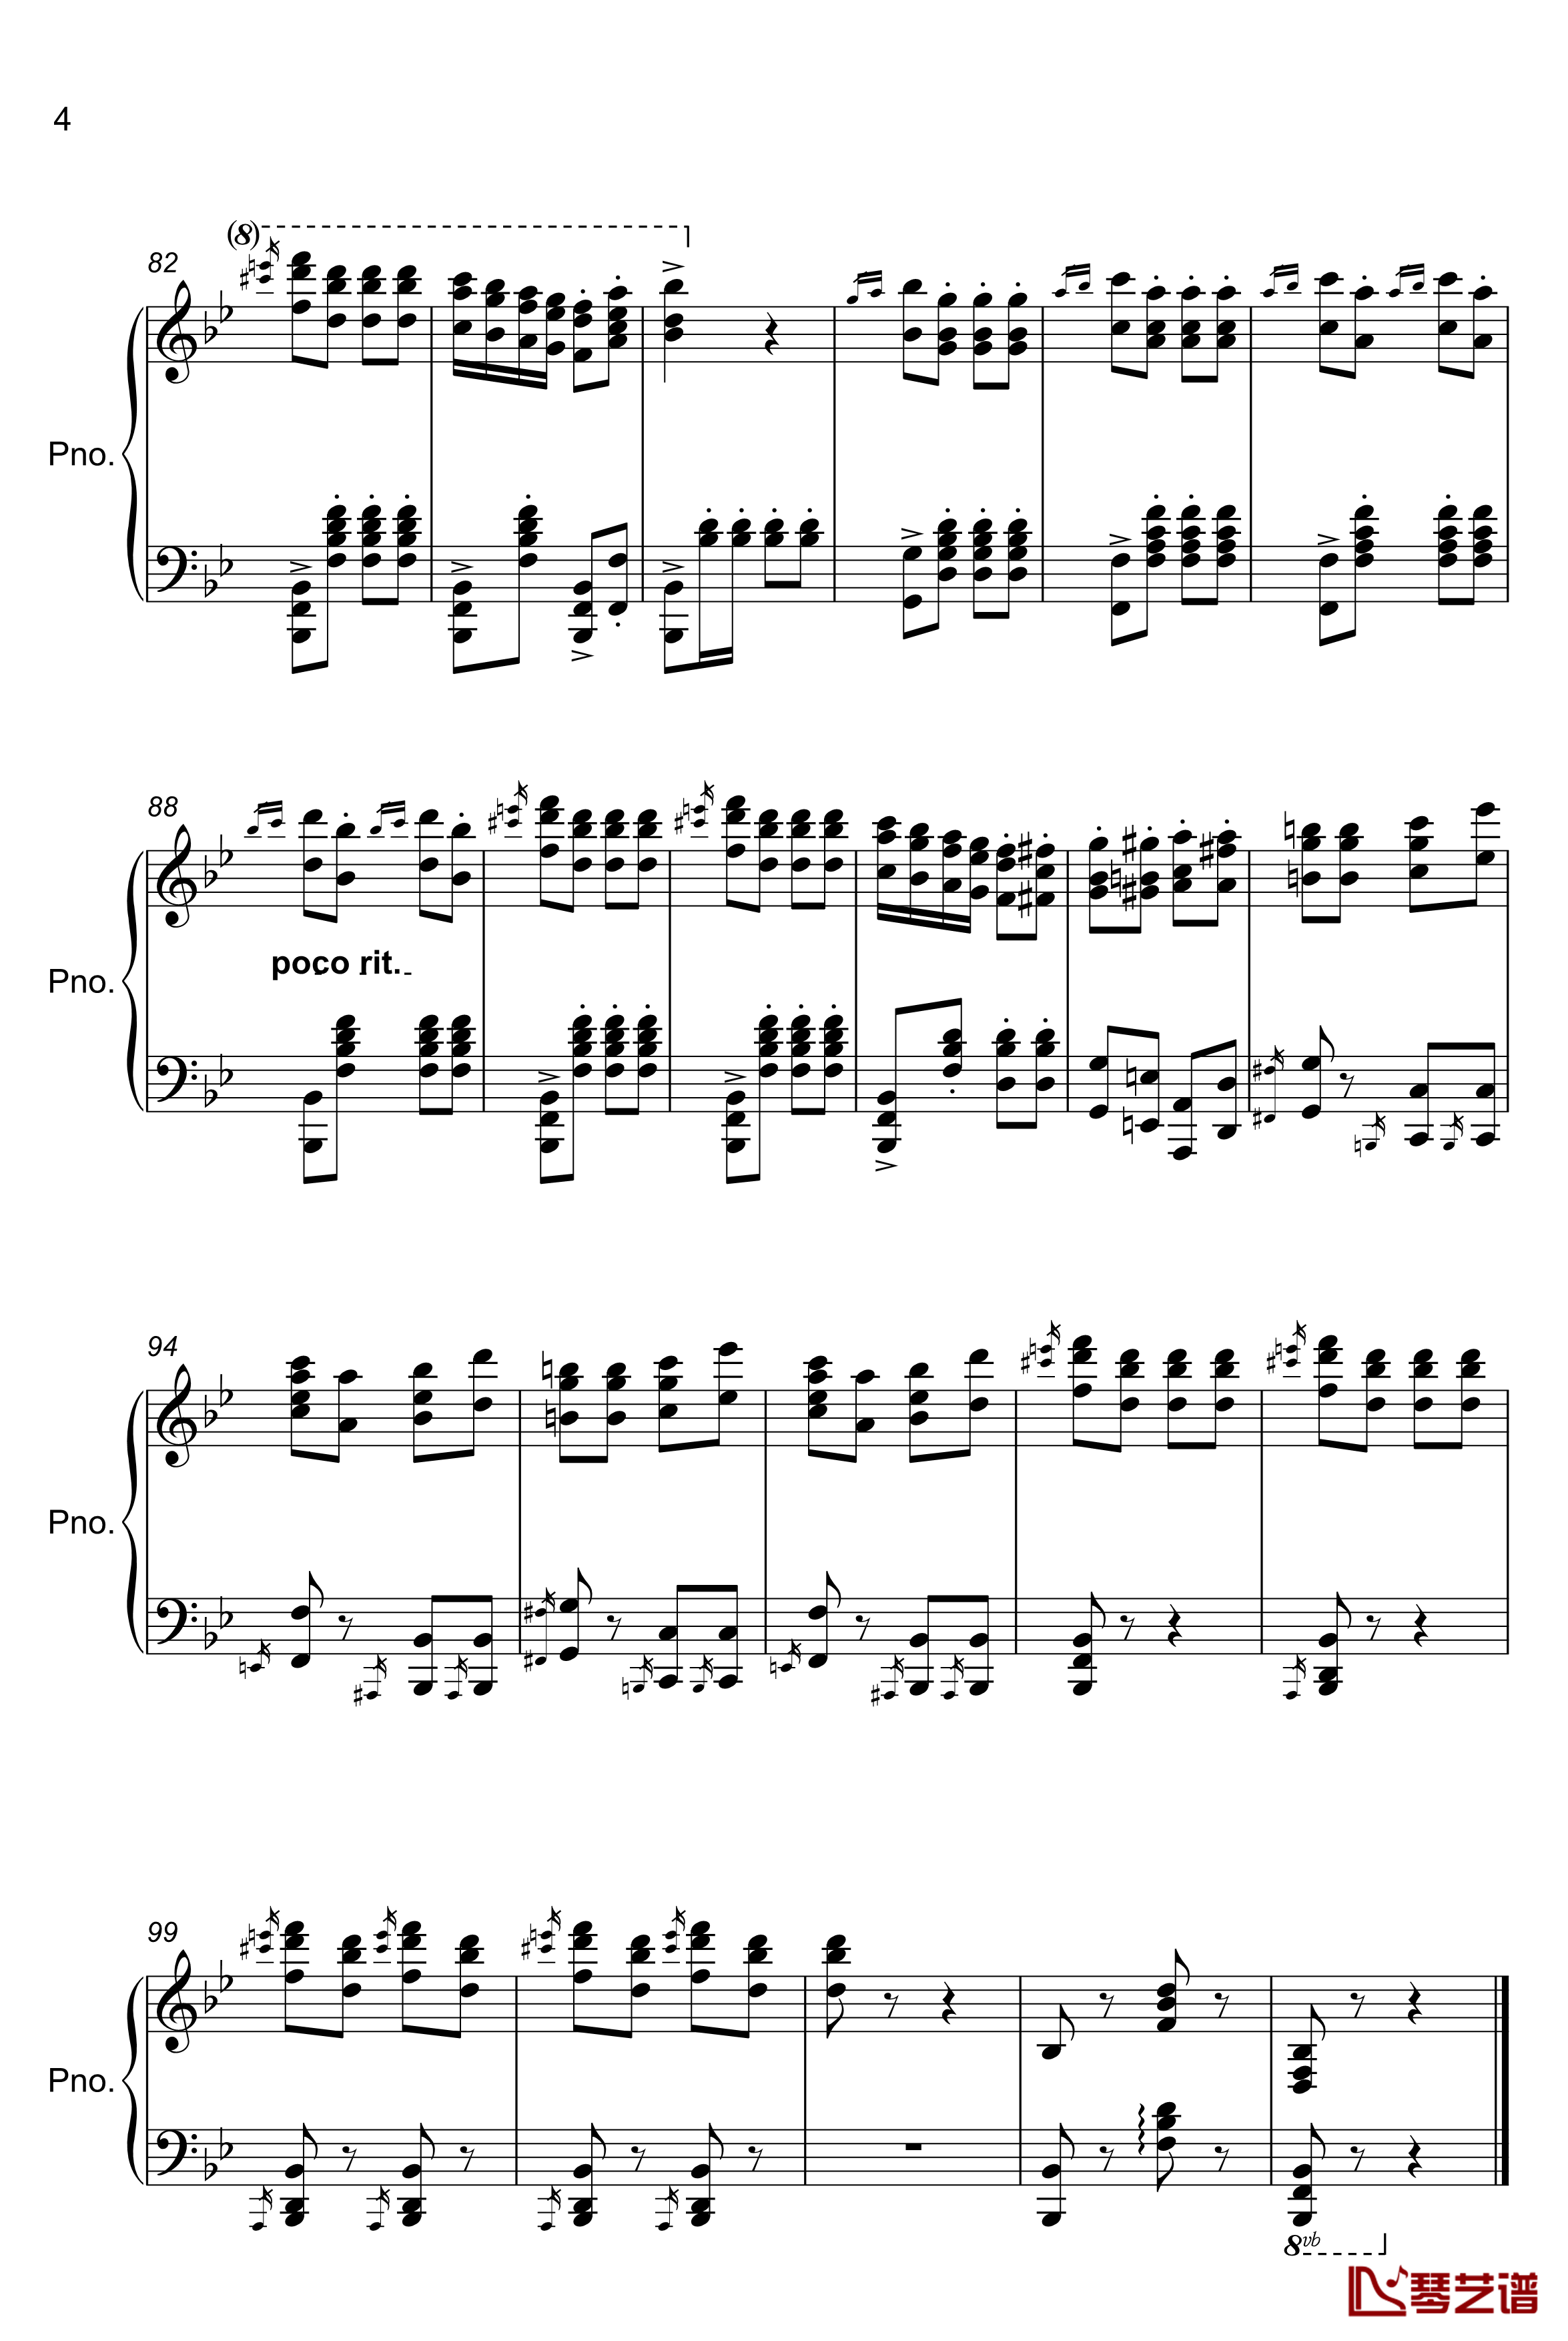 TUEKISH MARCH钢琴谱-kissin4